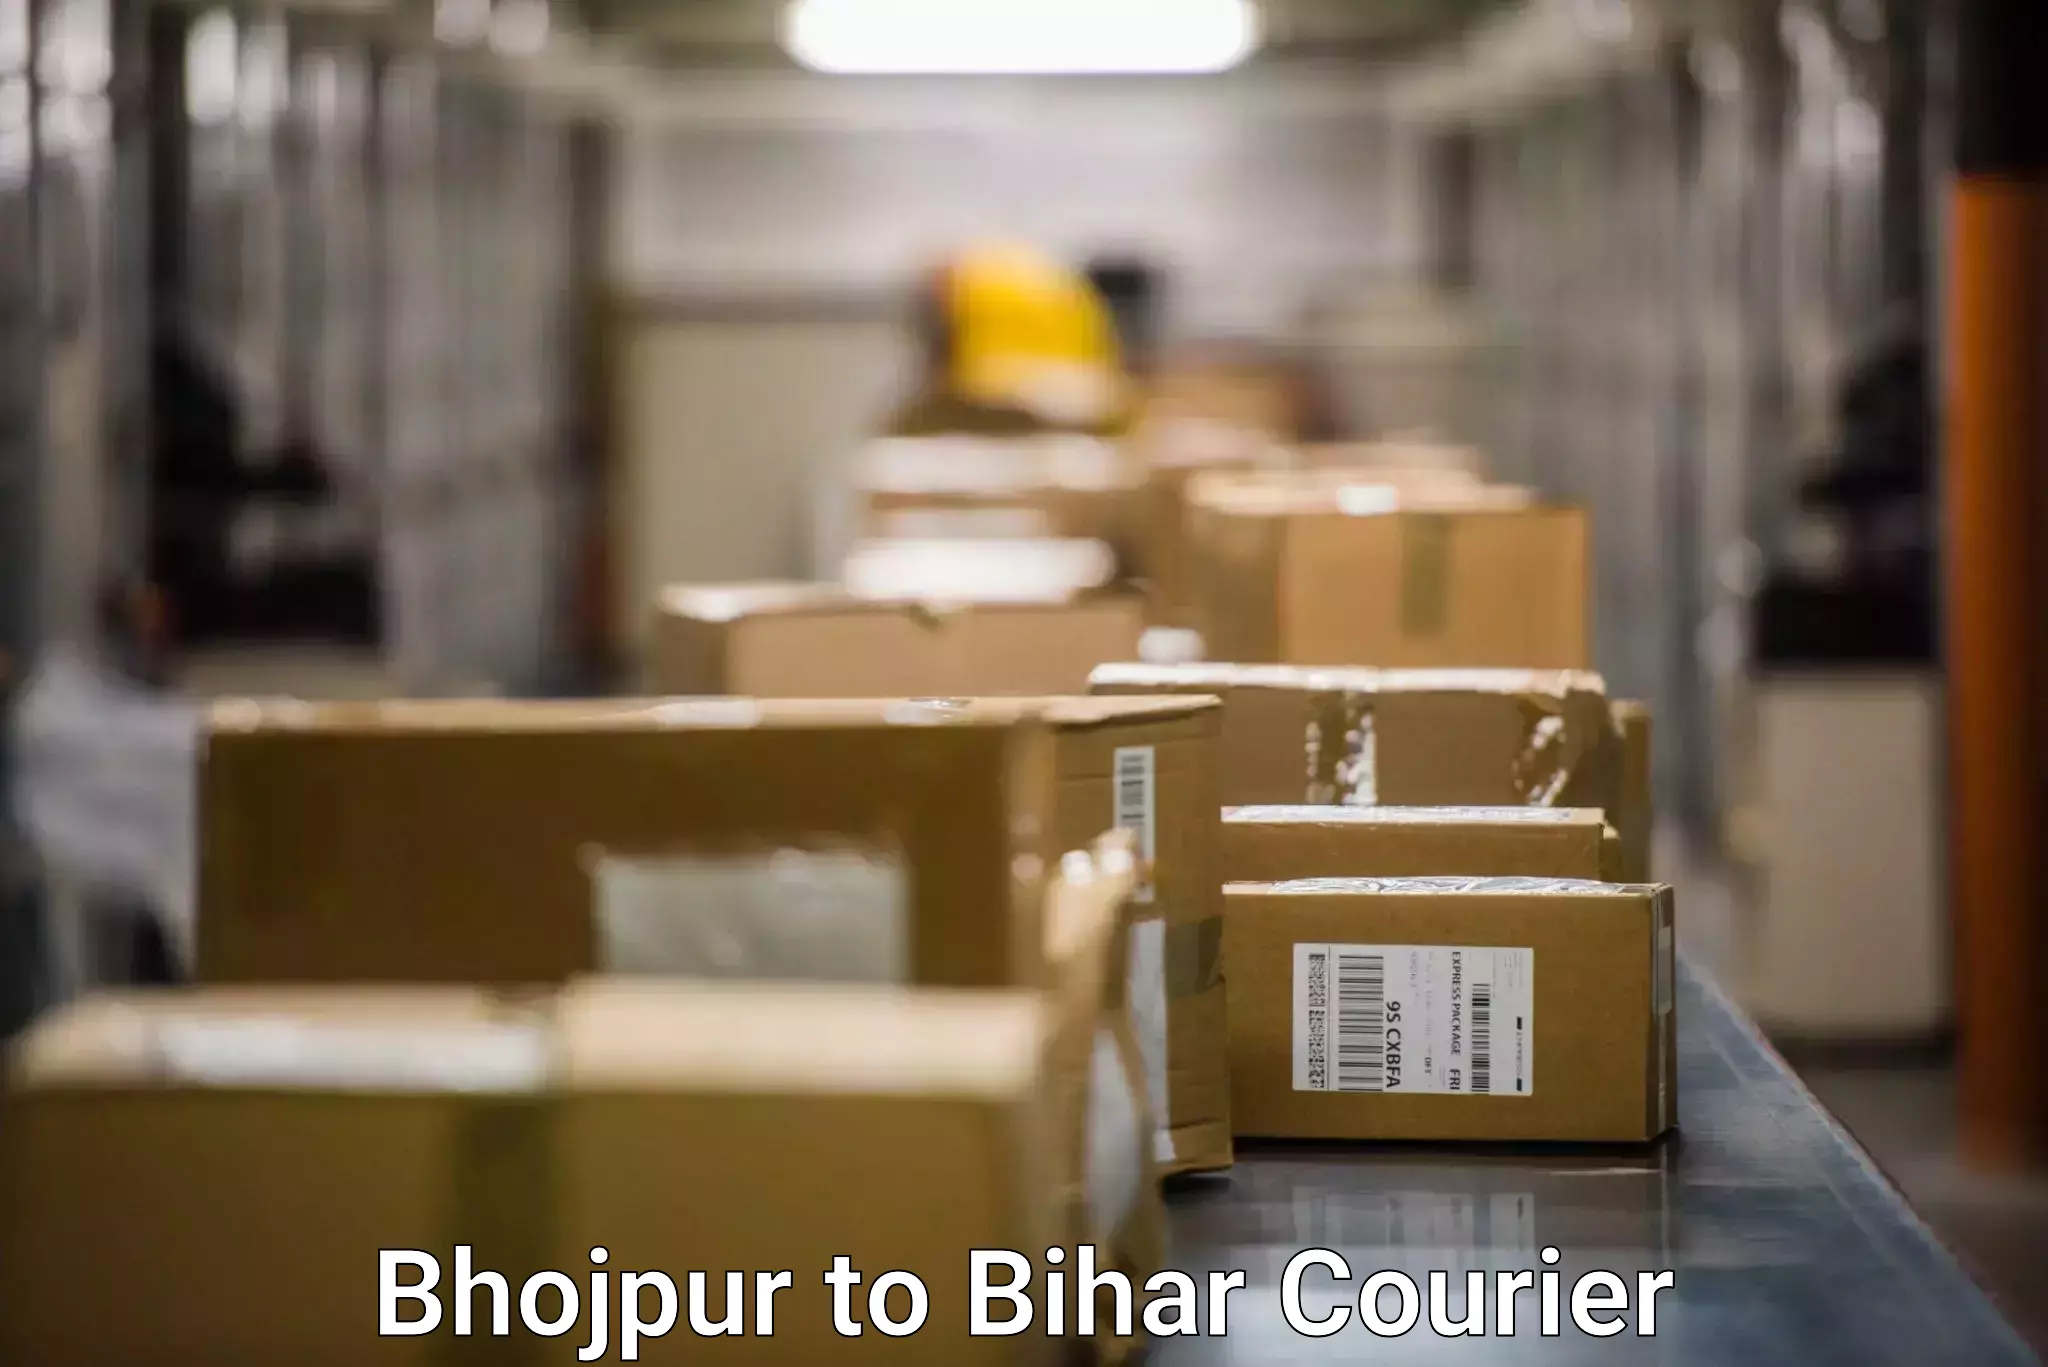 Urgent courier needs Bhojpur to Bihar